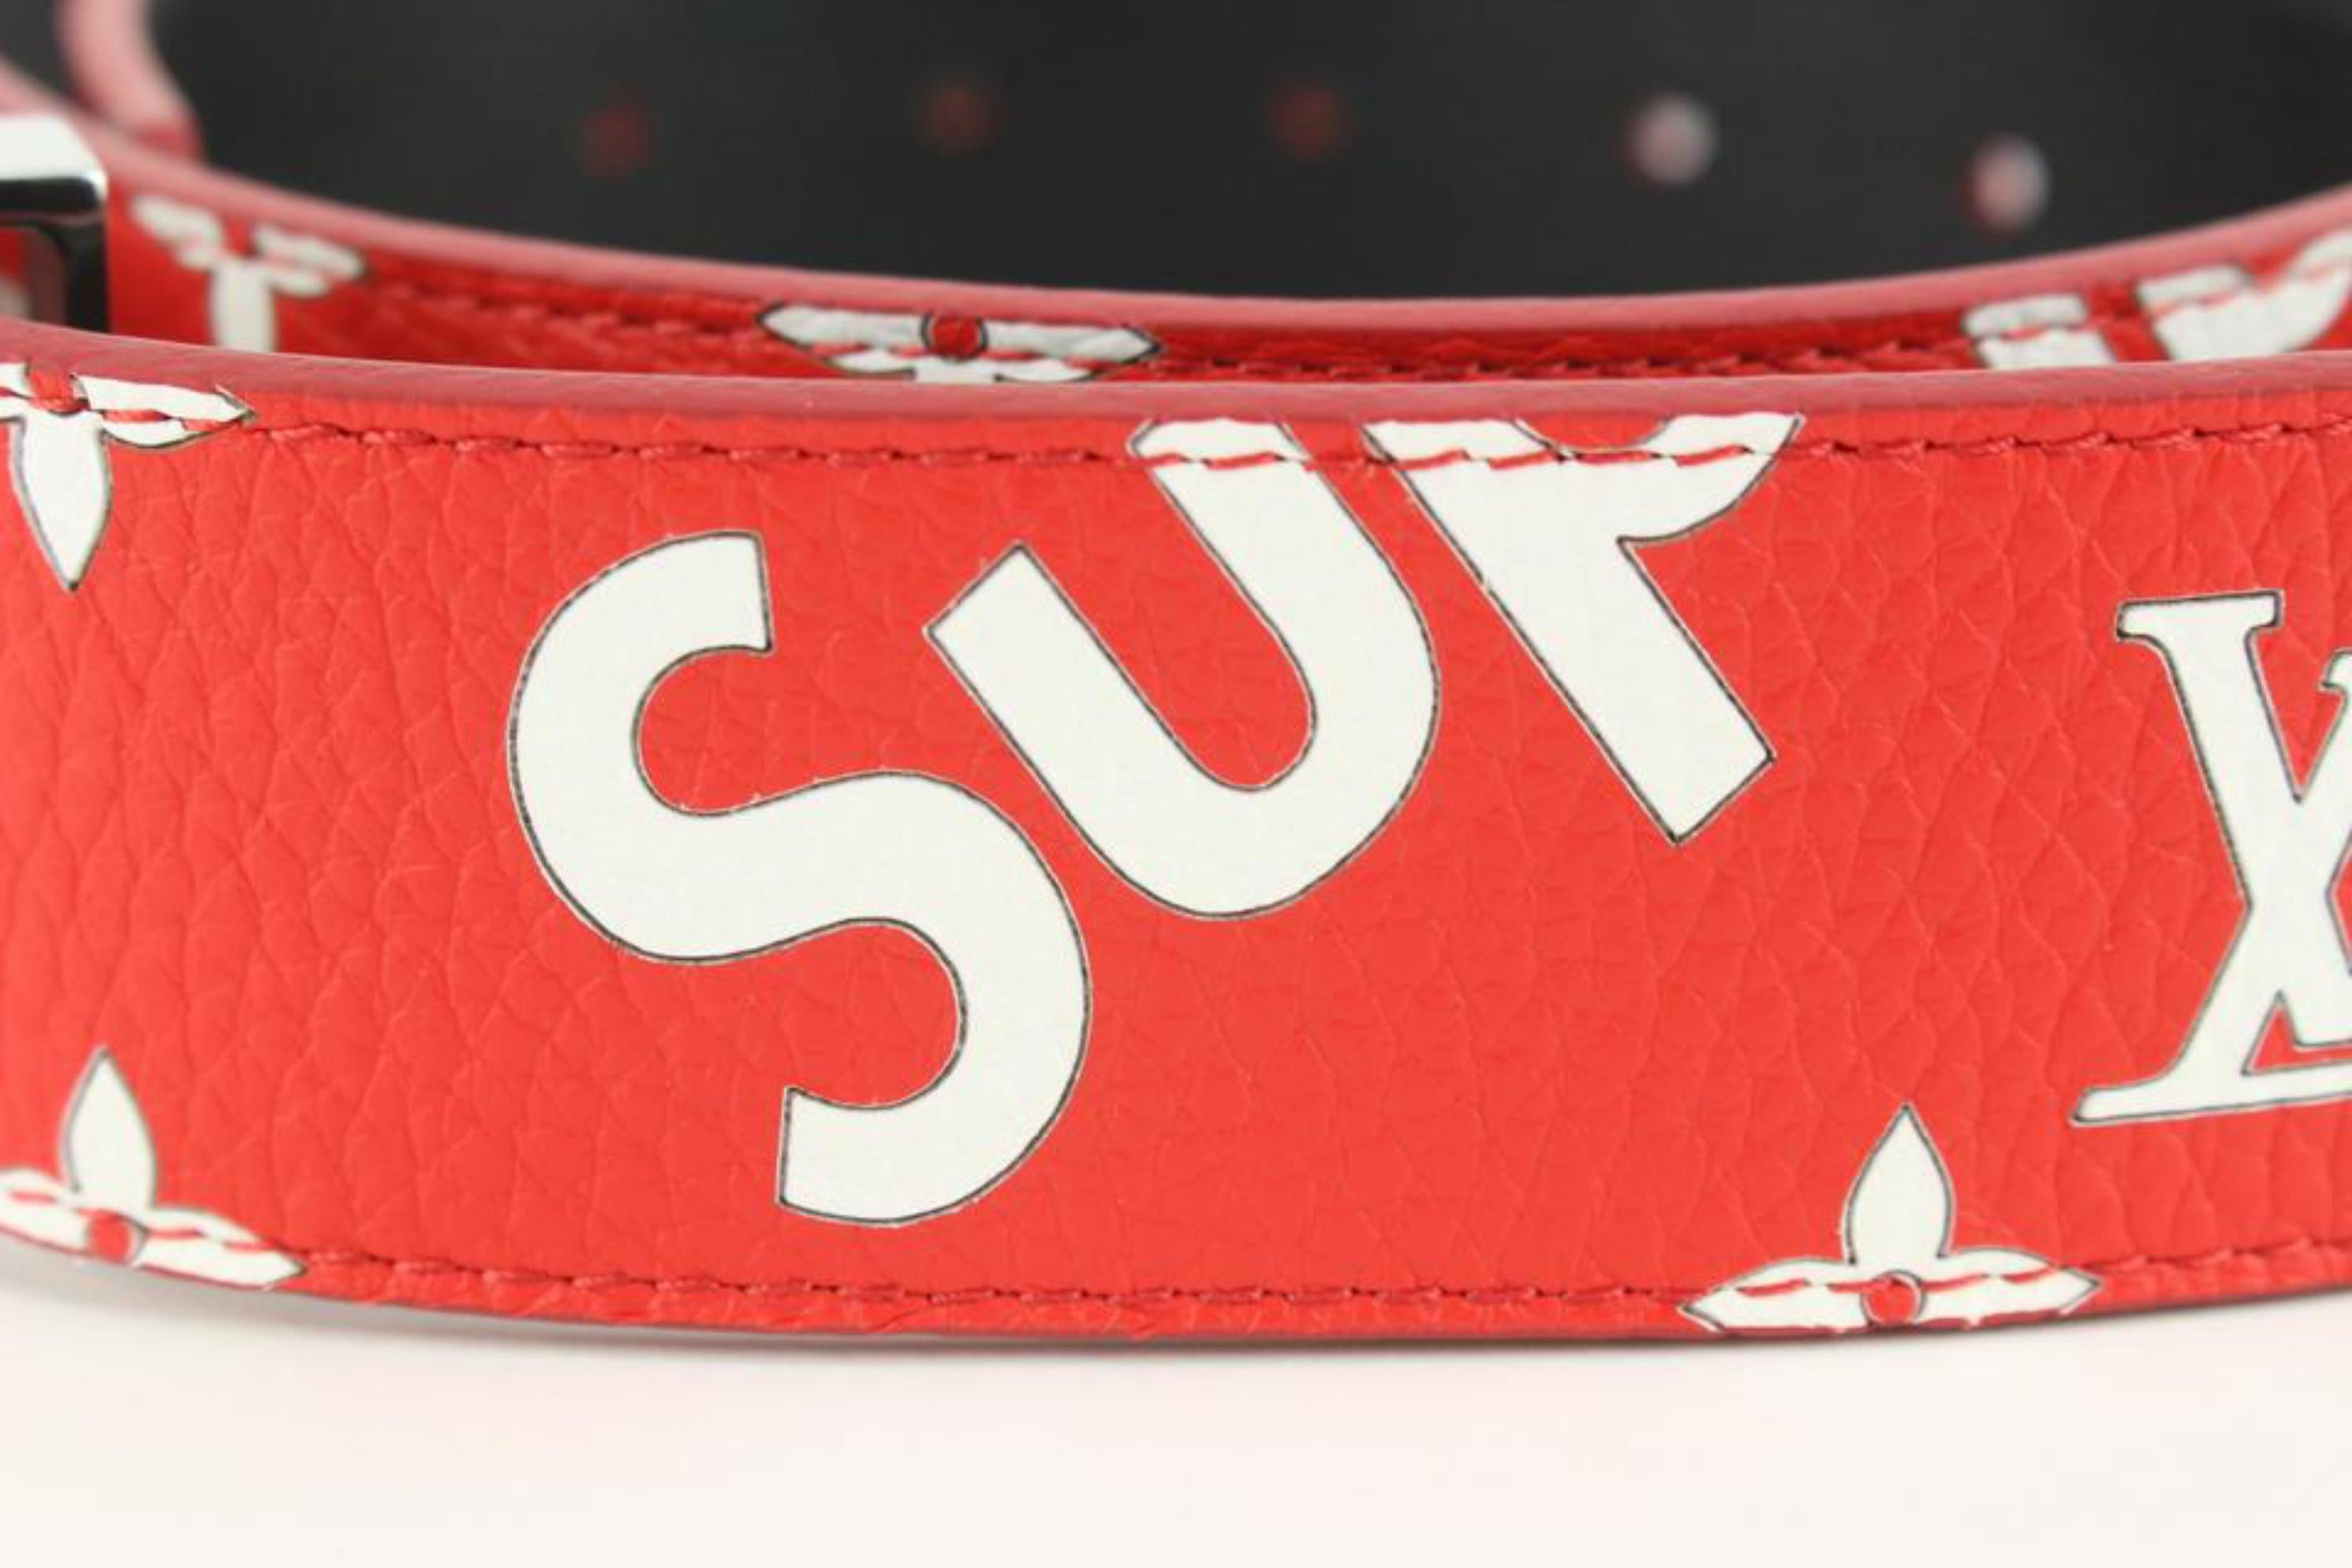 Louis Vuitton LV Initiales Belt Limited Edition Supreme Monogram